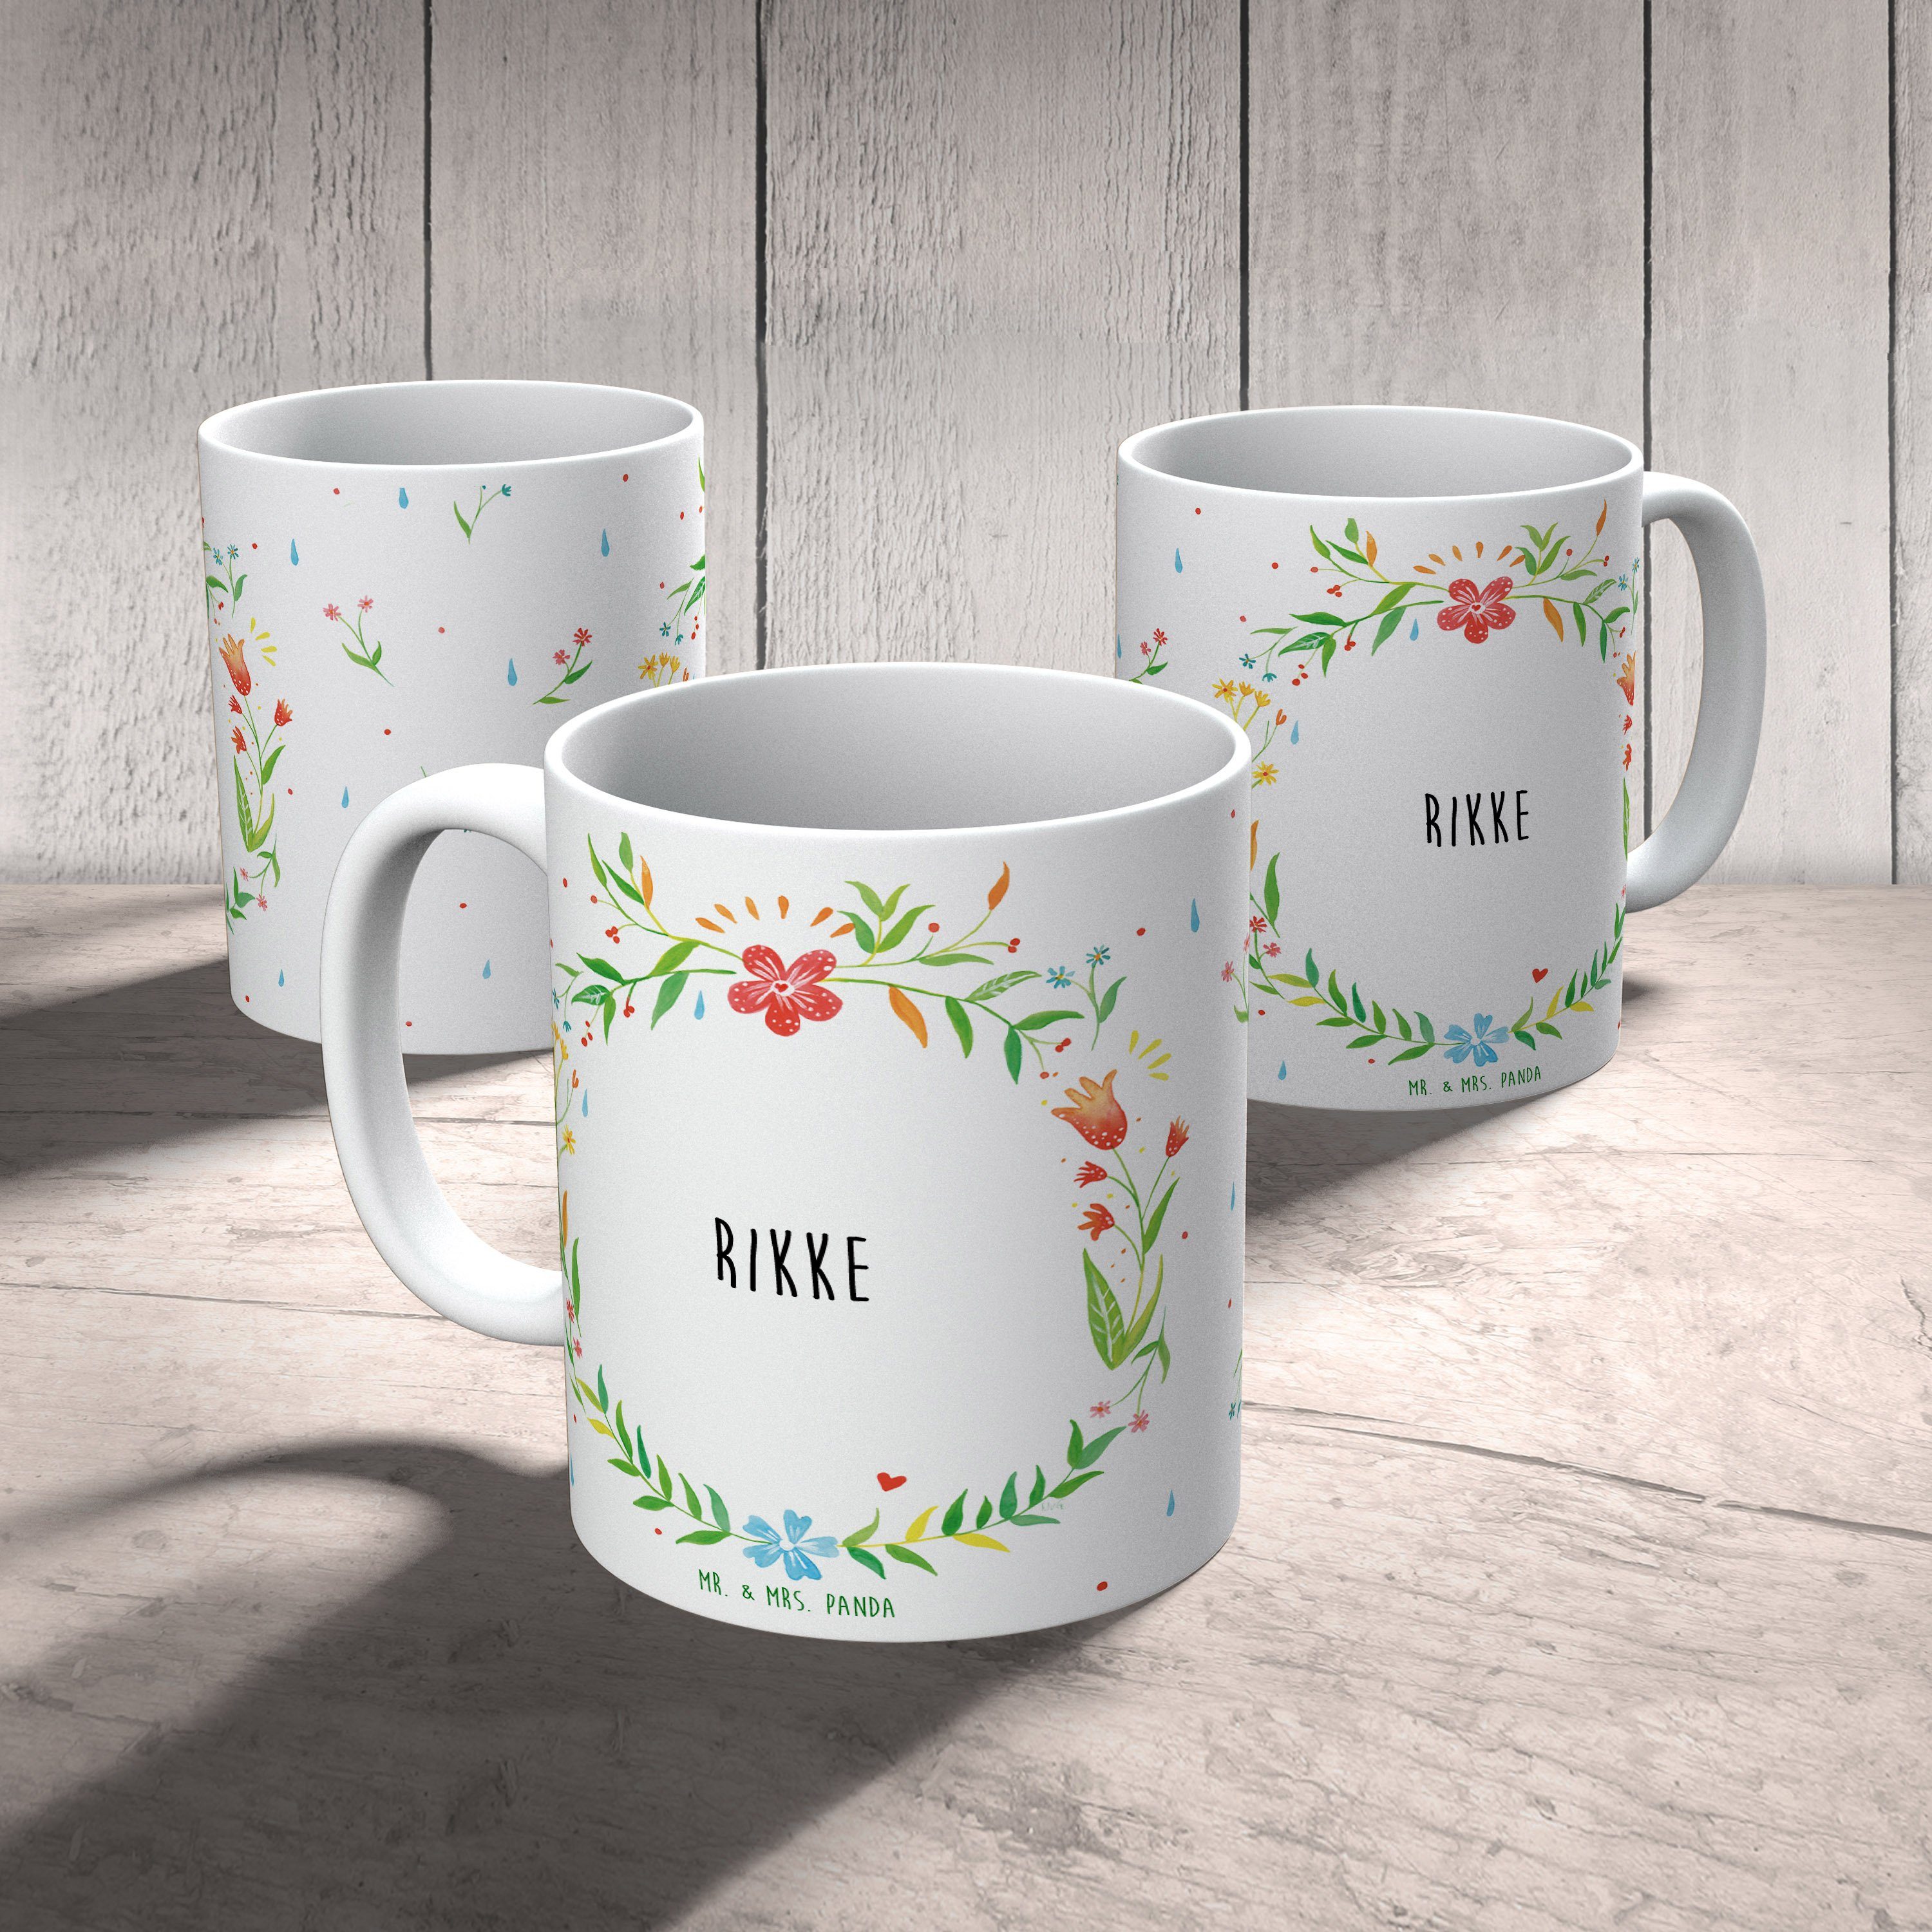 Mr. & Mrs. Panda Tasse, Kerami, Rikke Tasse Kaffeetasse, Keramik Porzellantasse, - Geschenk Geschenk